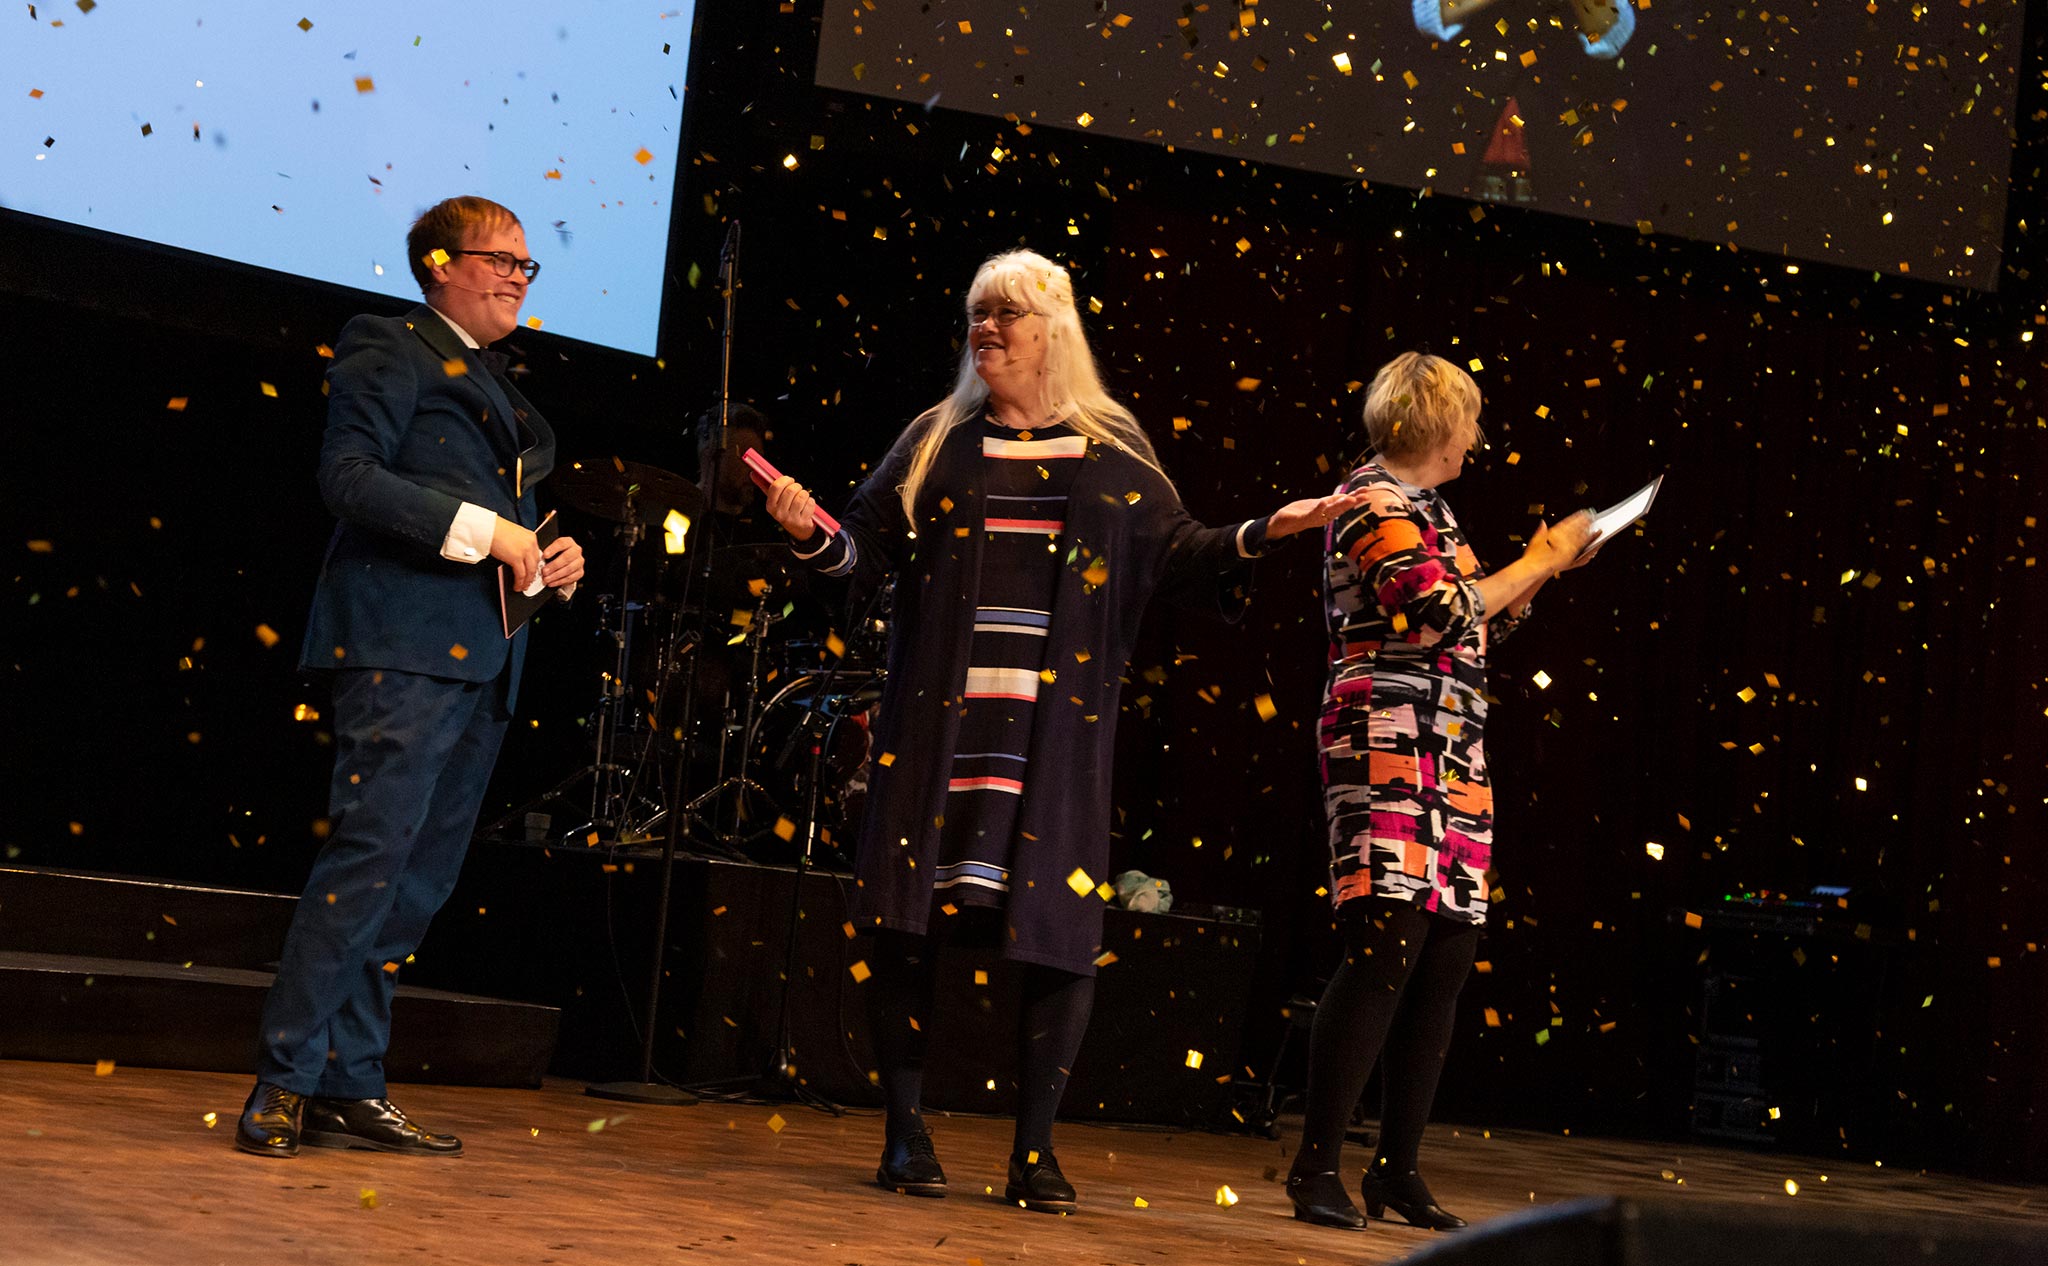 Irén Lejegren gratulerade med konfetti.